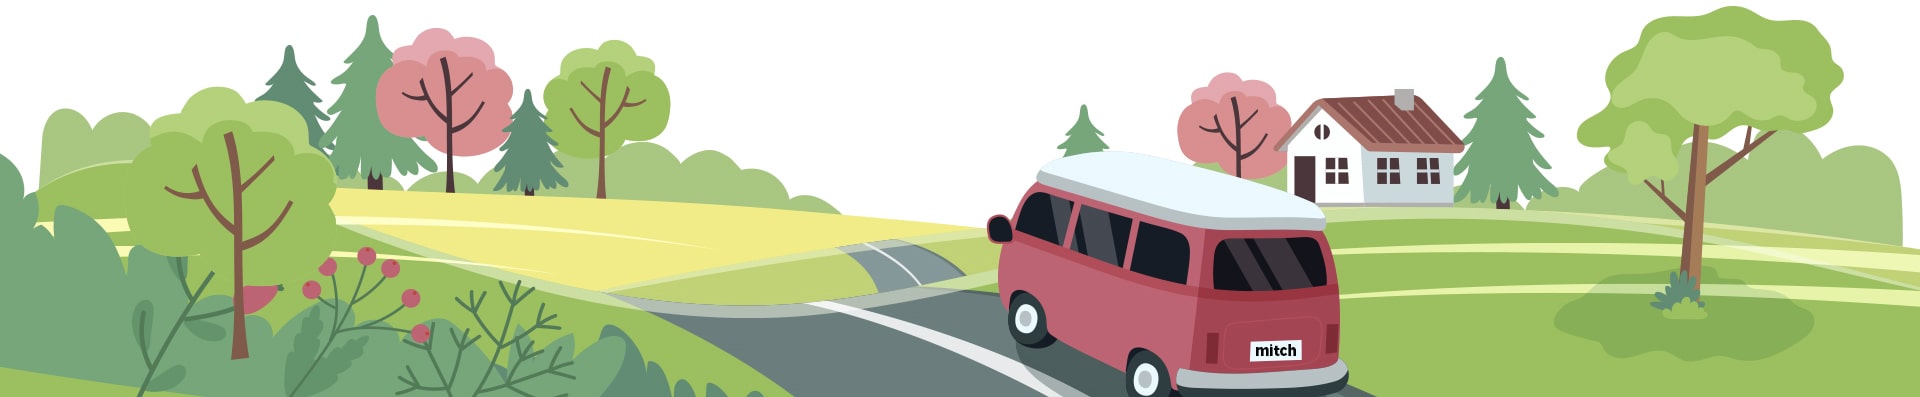 cartoon van driving over hills